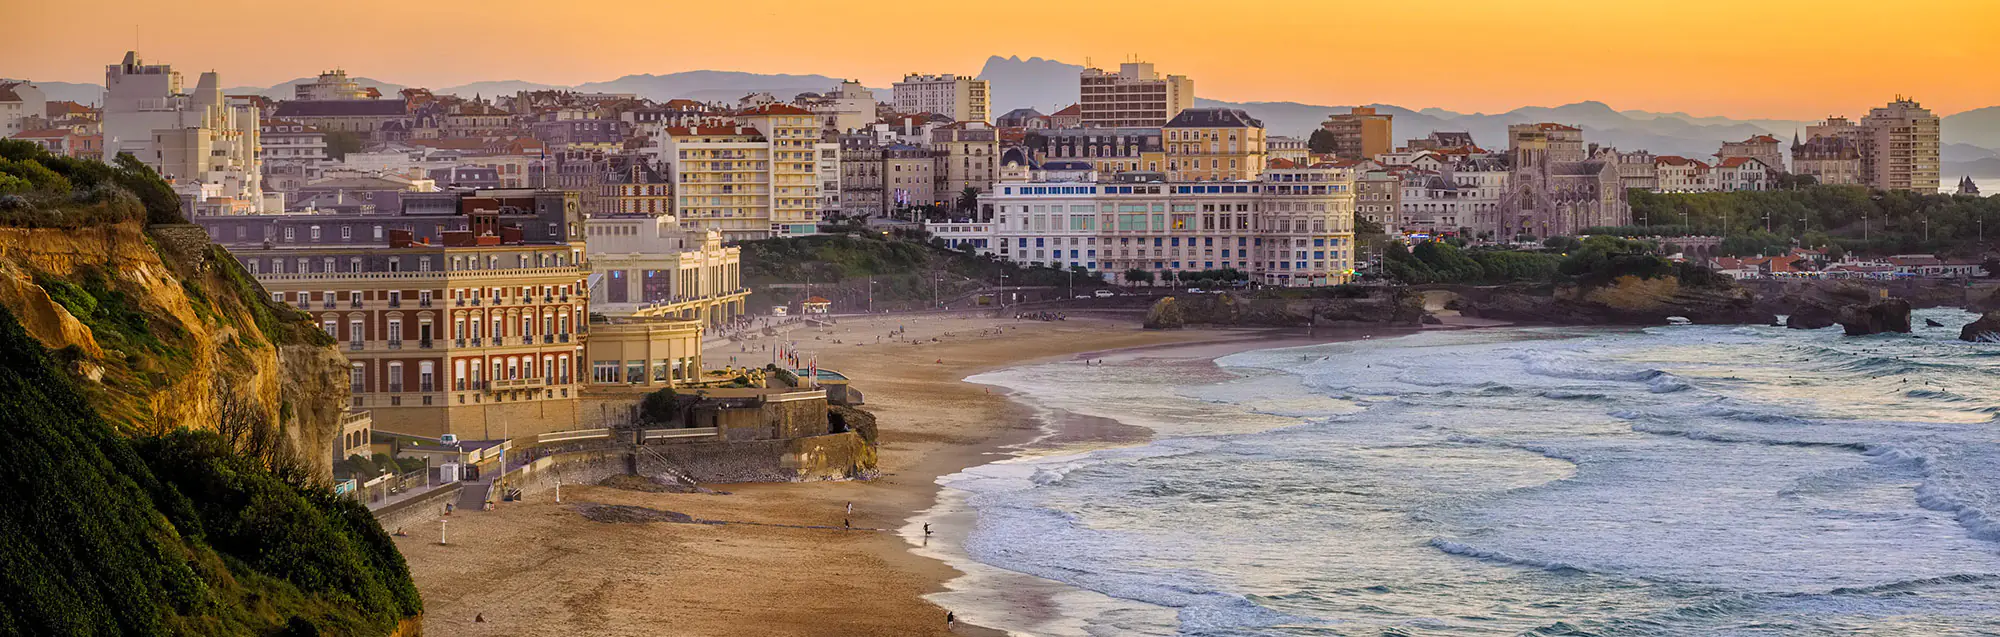 Escuelas de francés para adultos, niños y adolescentes en Biarritz